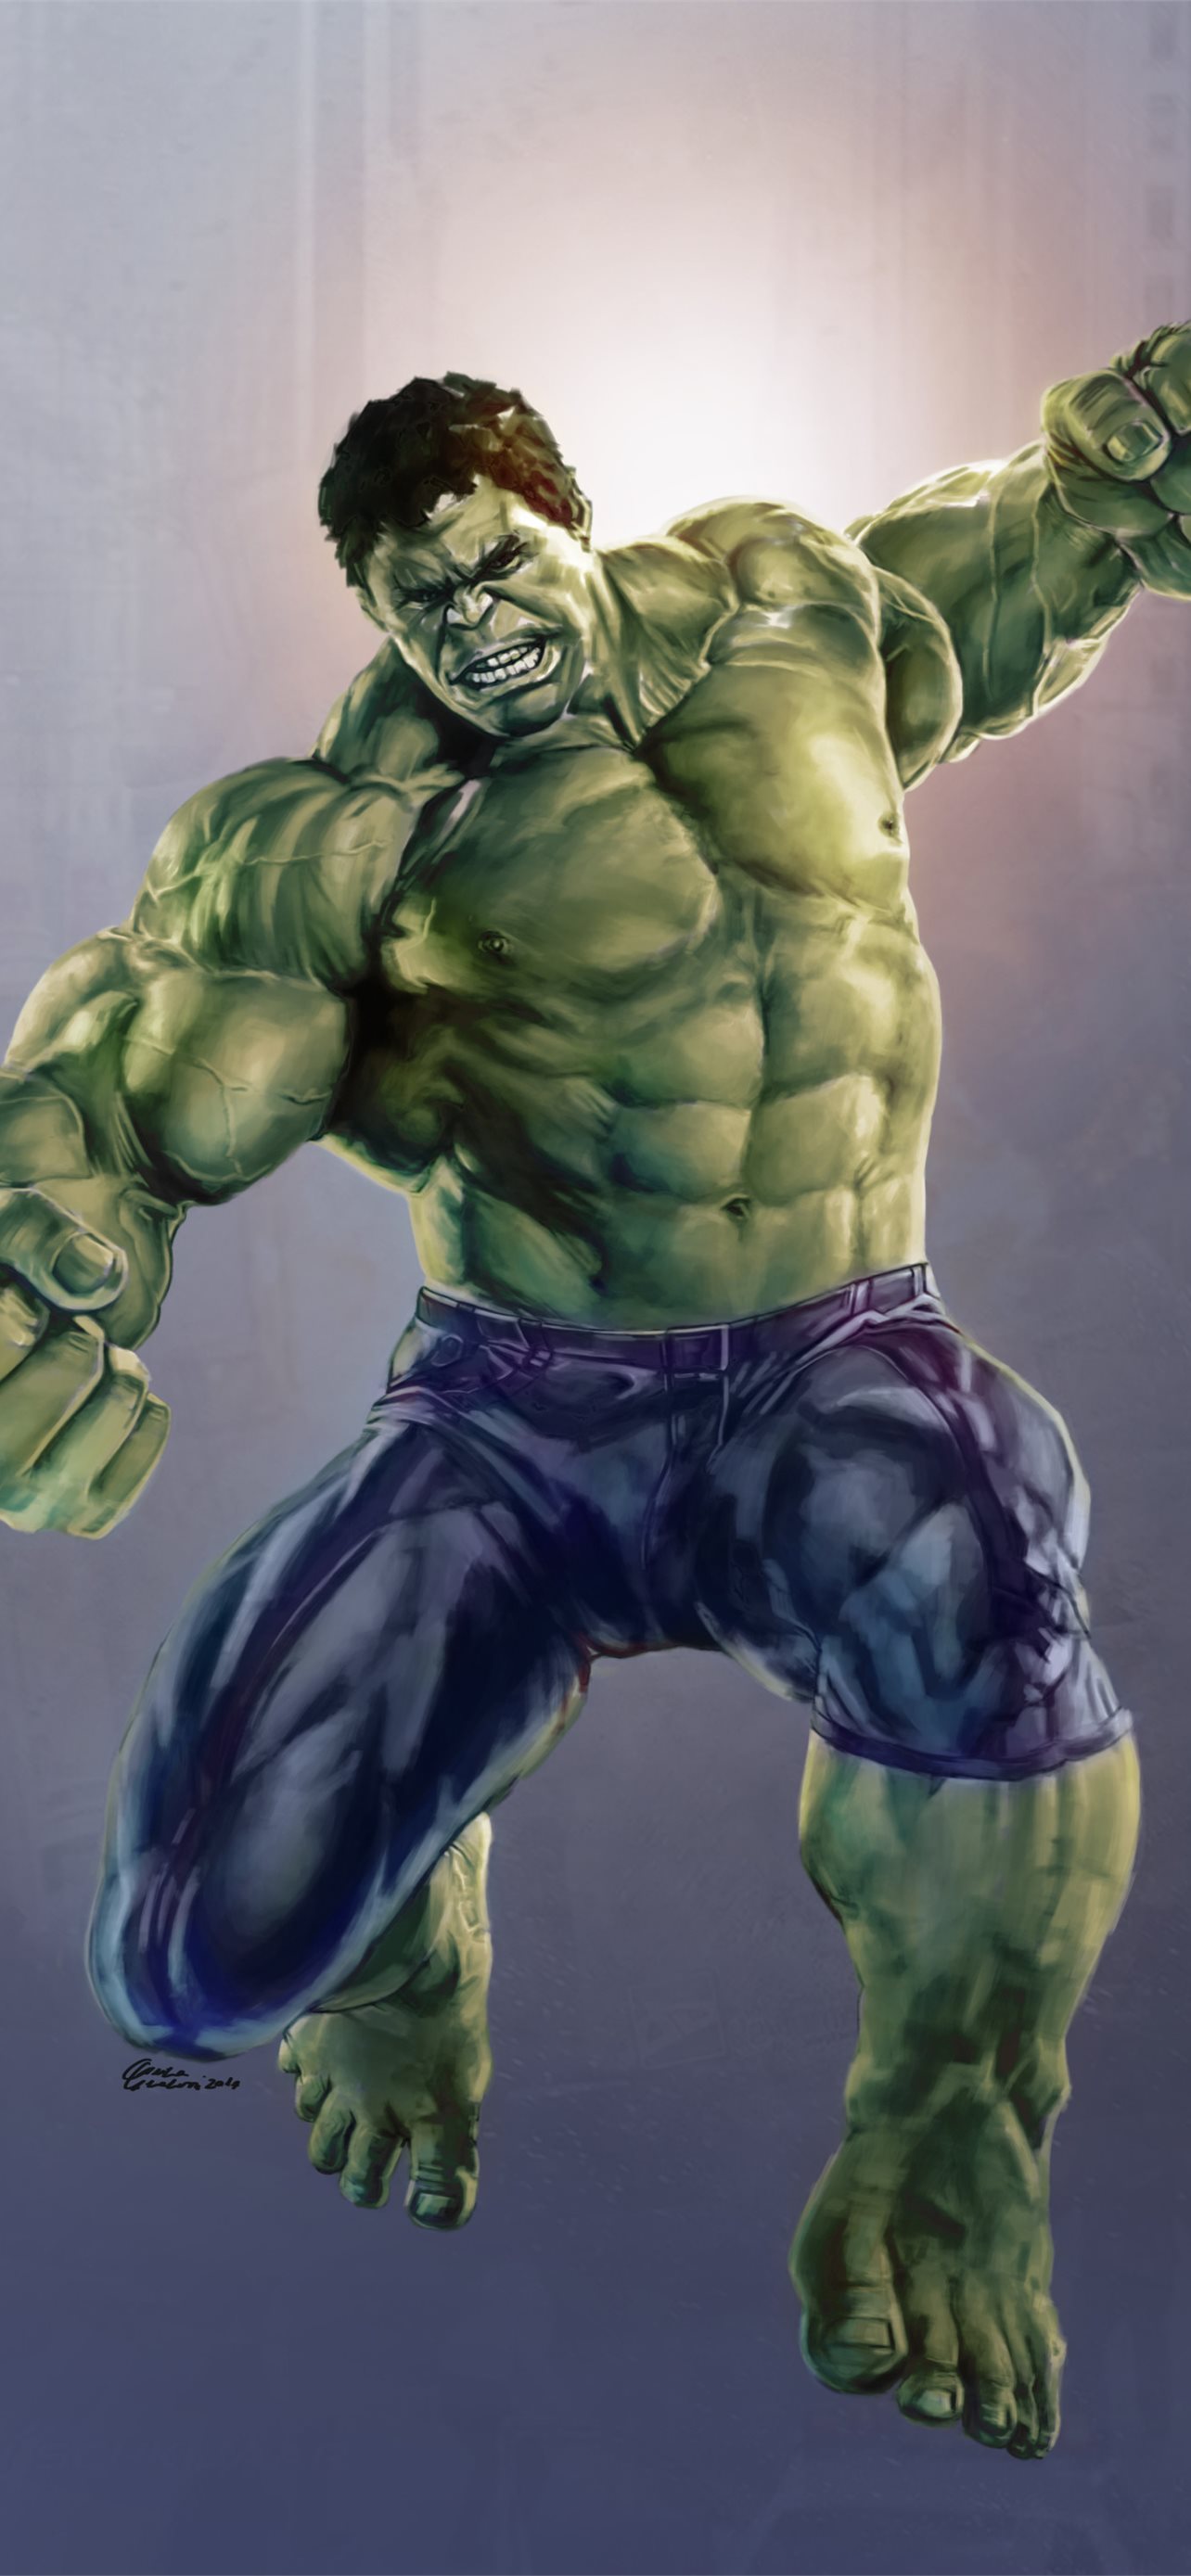 3D Hulk Overpowered Wallpaper for Wall - Magic Decor ®-sgquangbinhtourist.com.vn